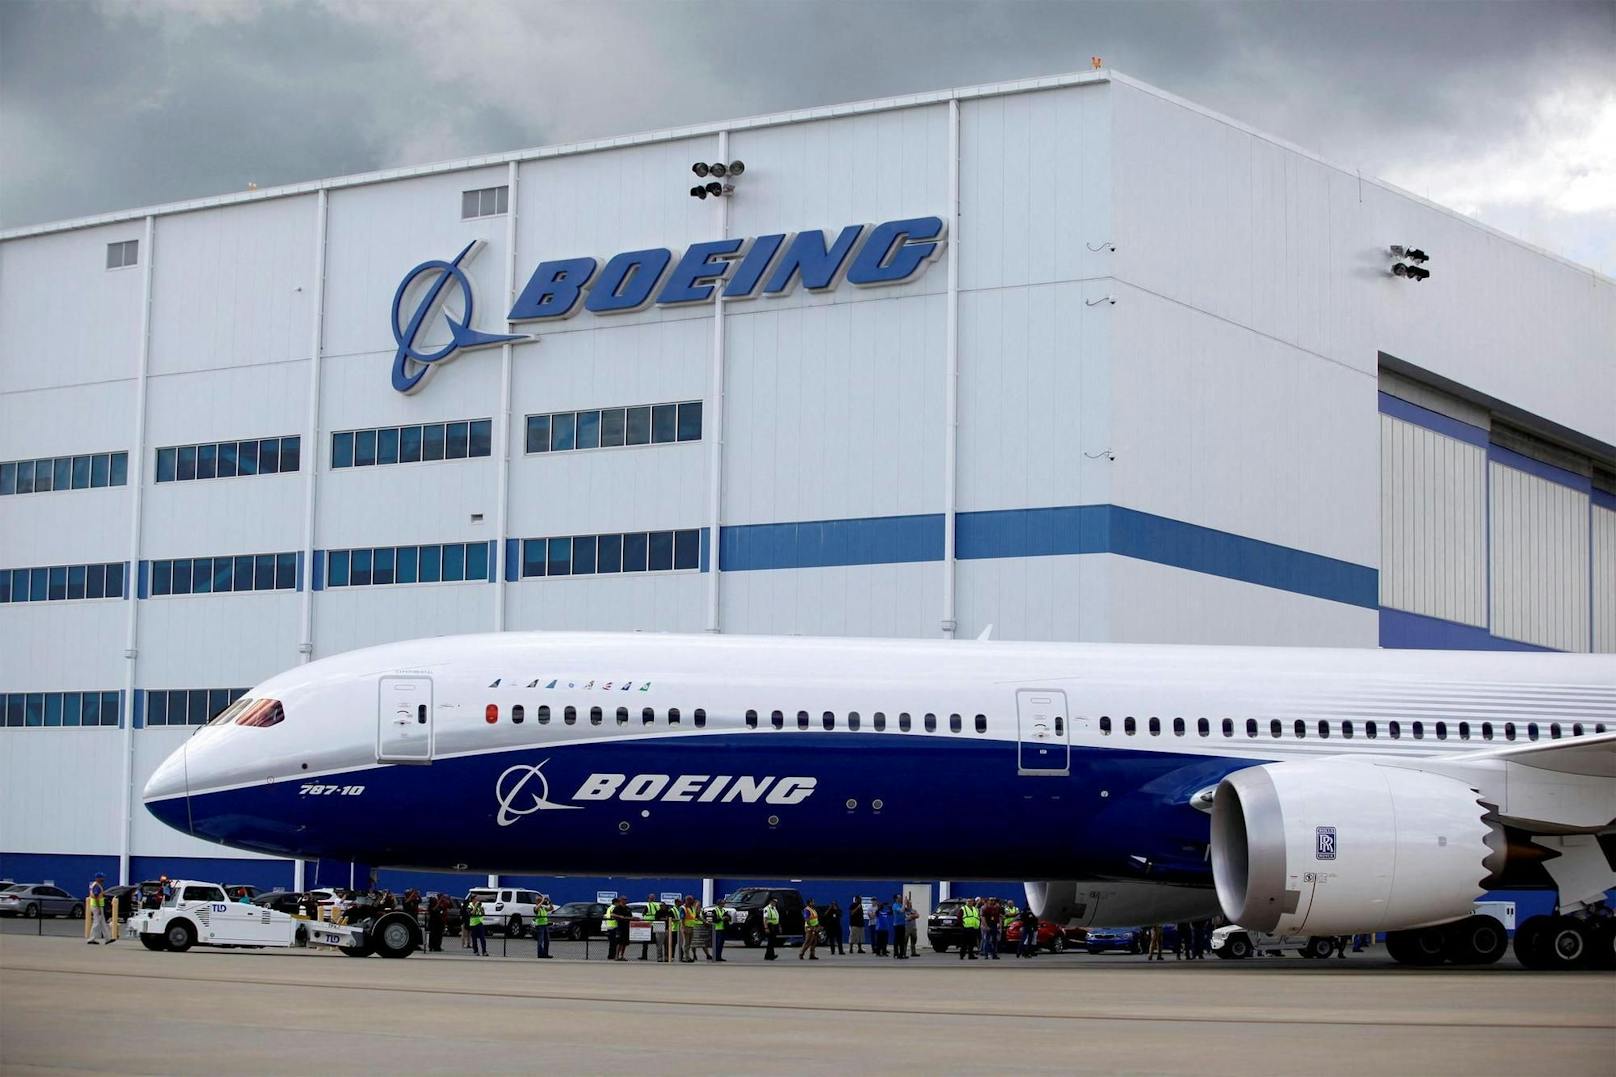 Sicherheit von Boeing 787 wegen 5G-Netz gefährdet